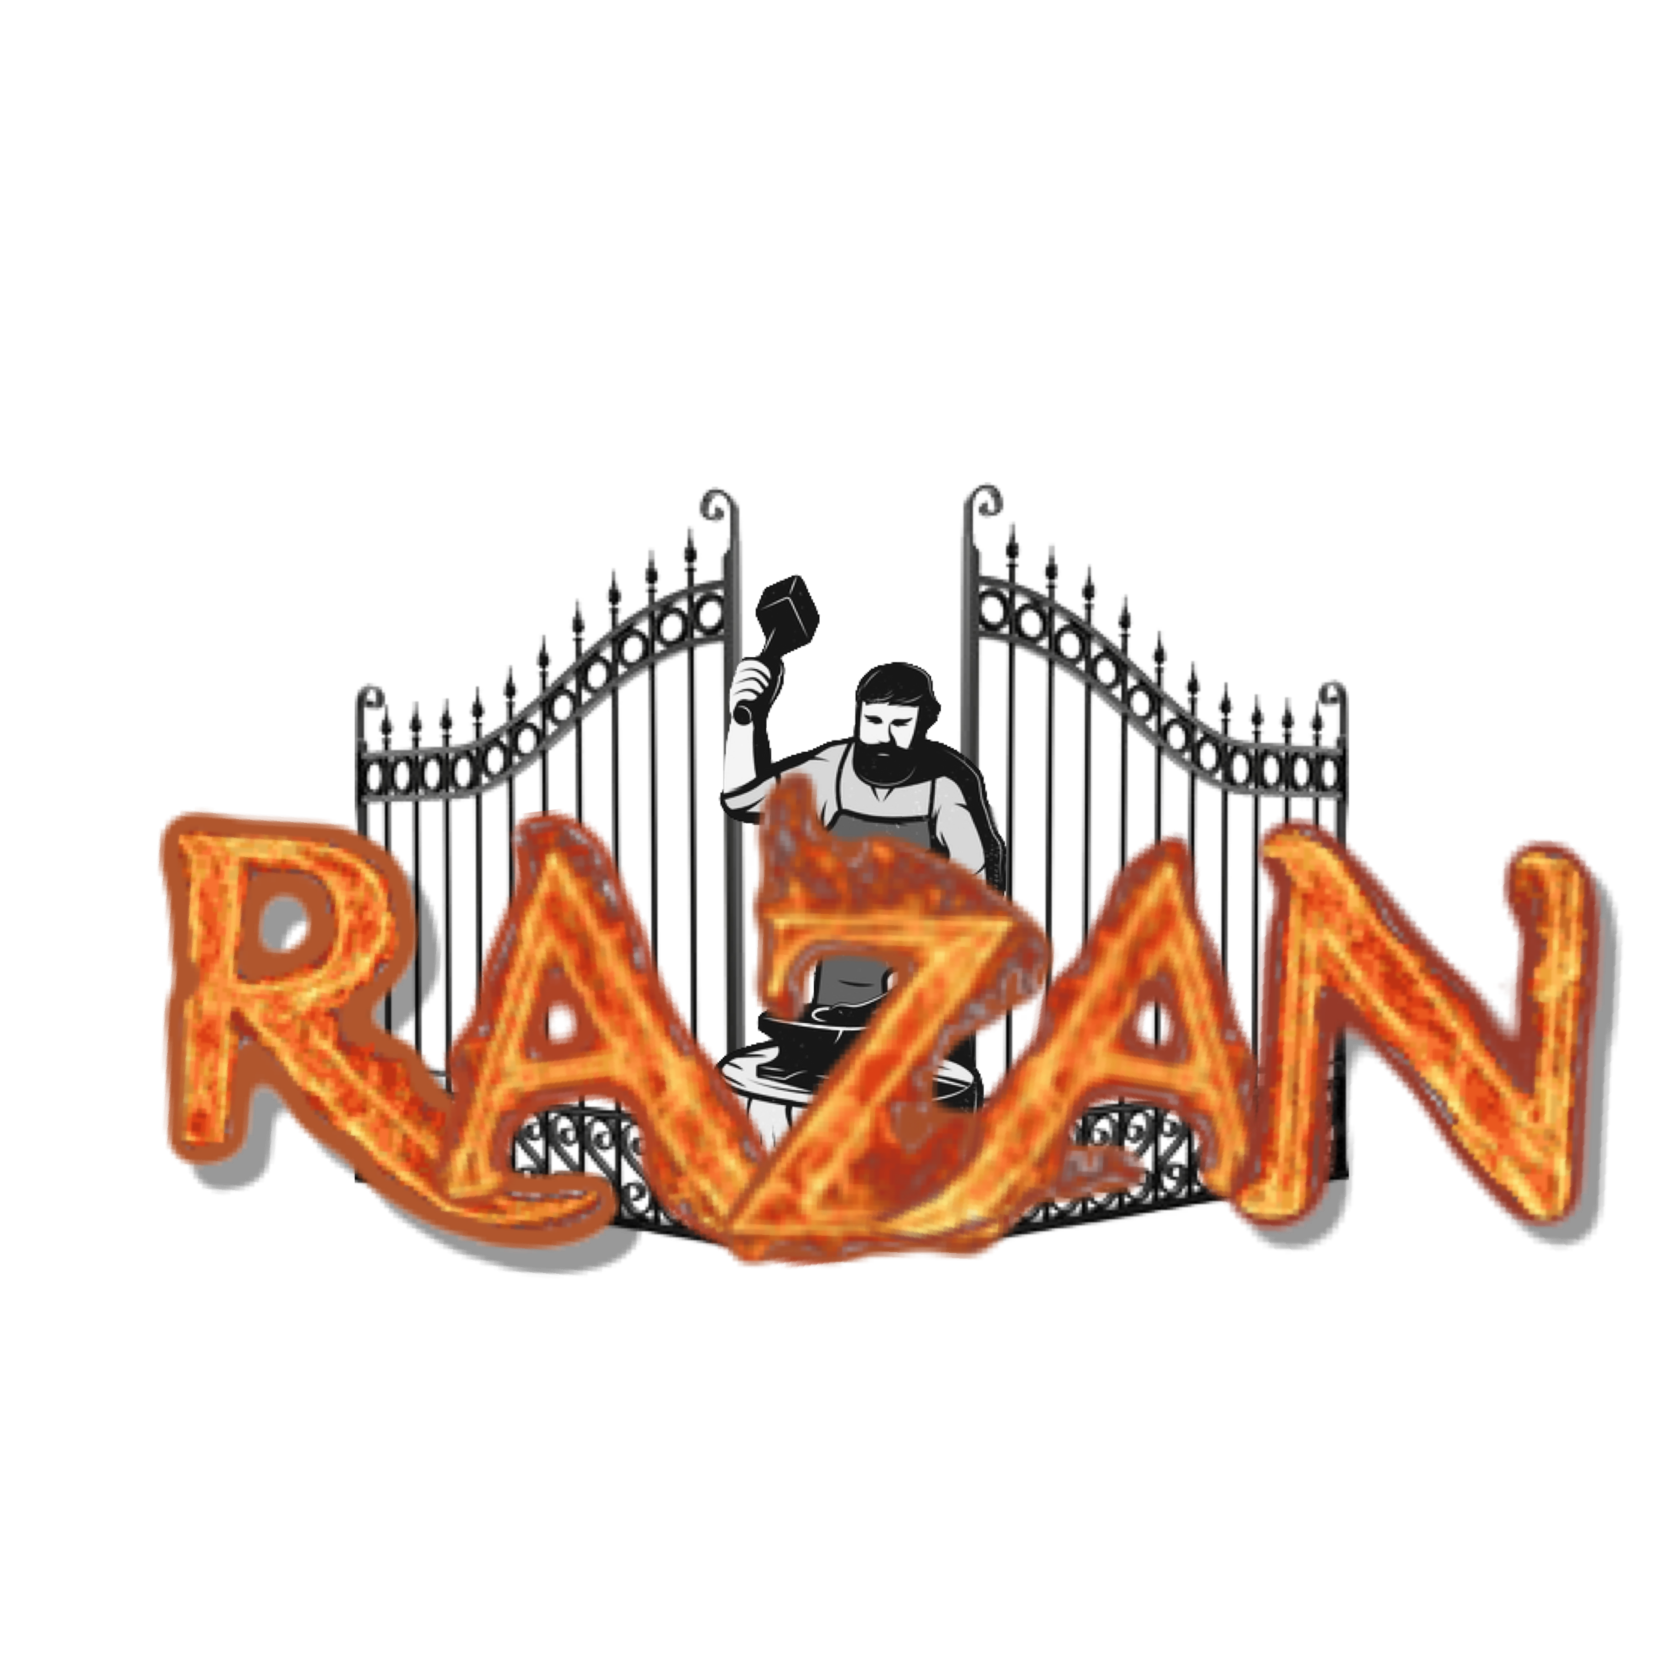  Razan 